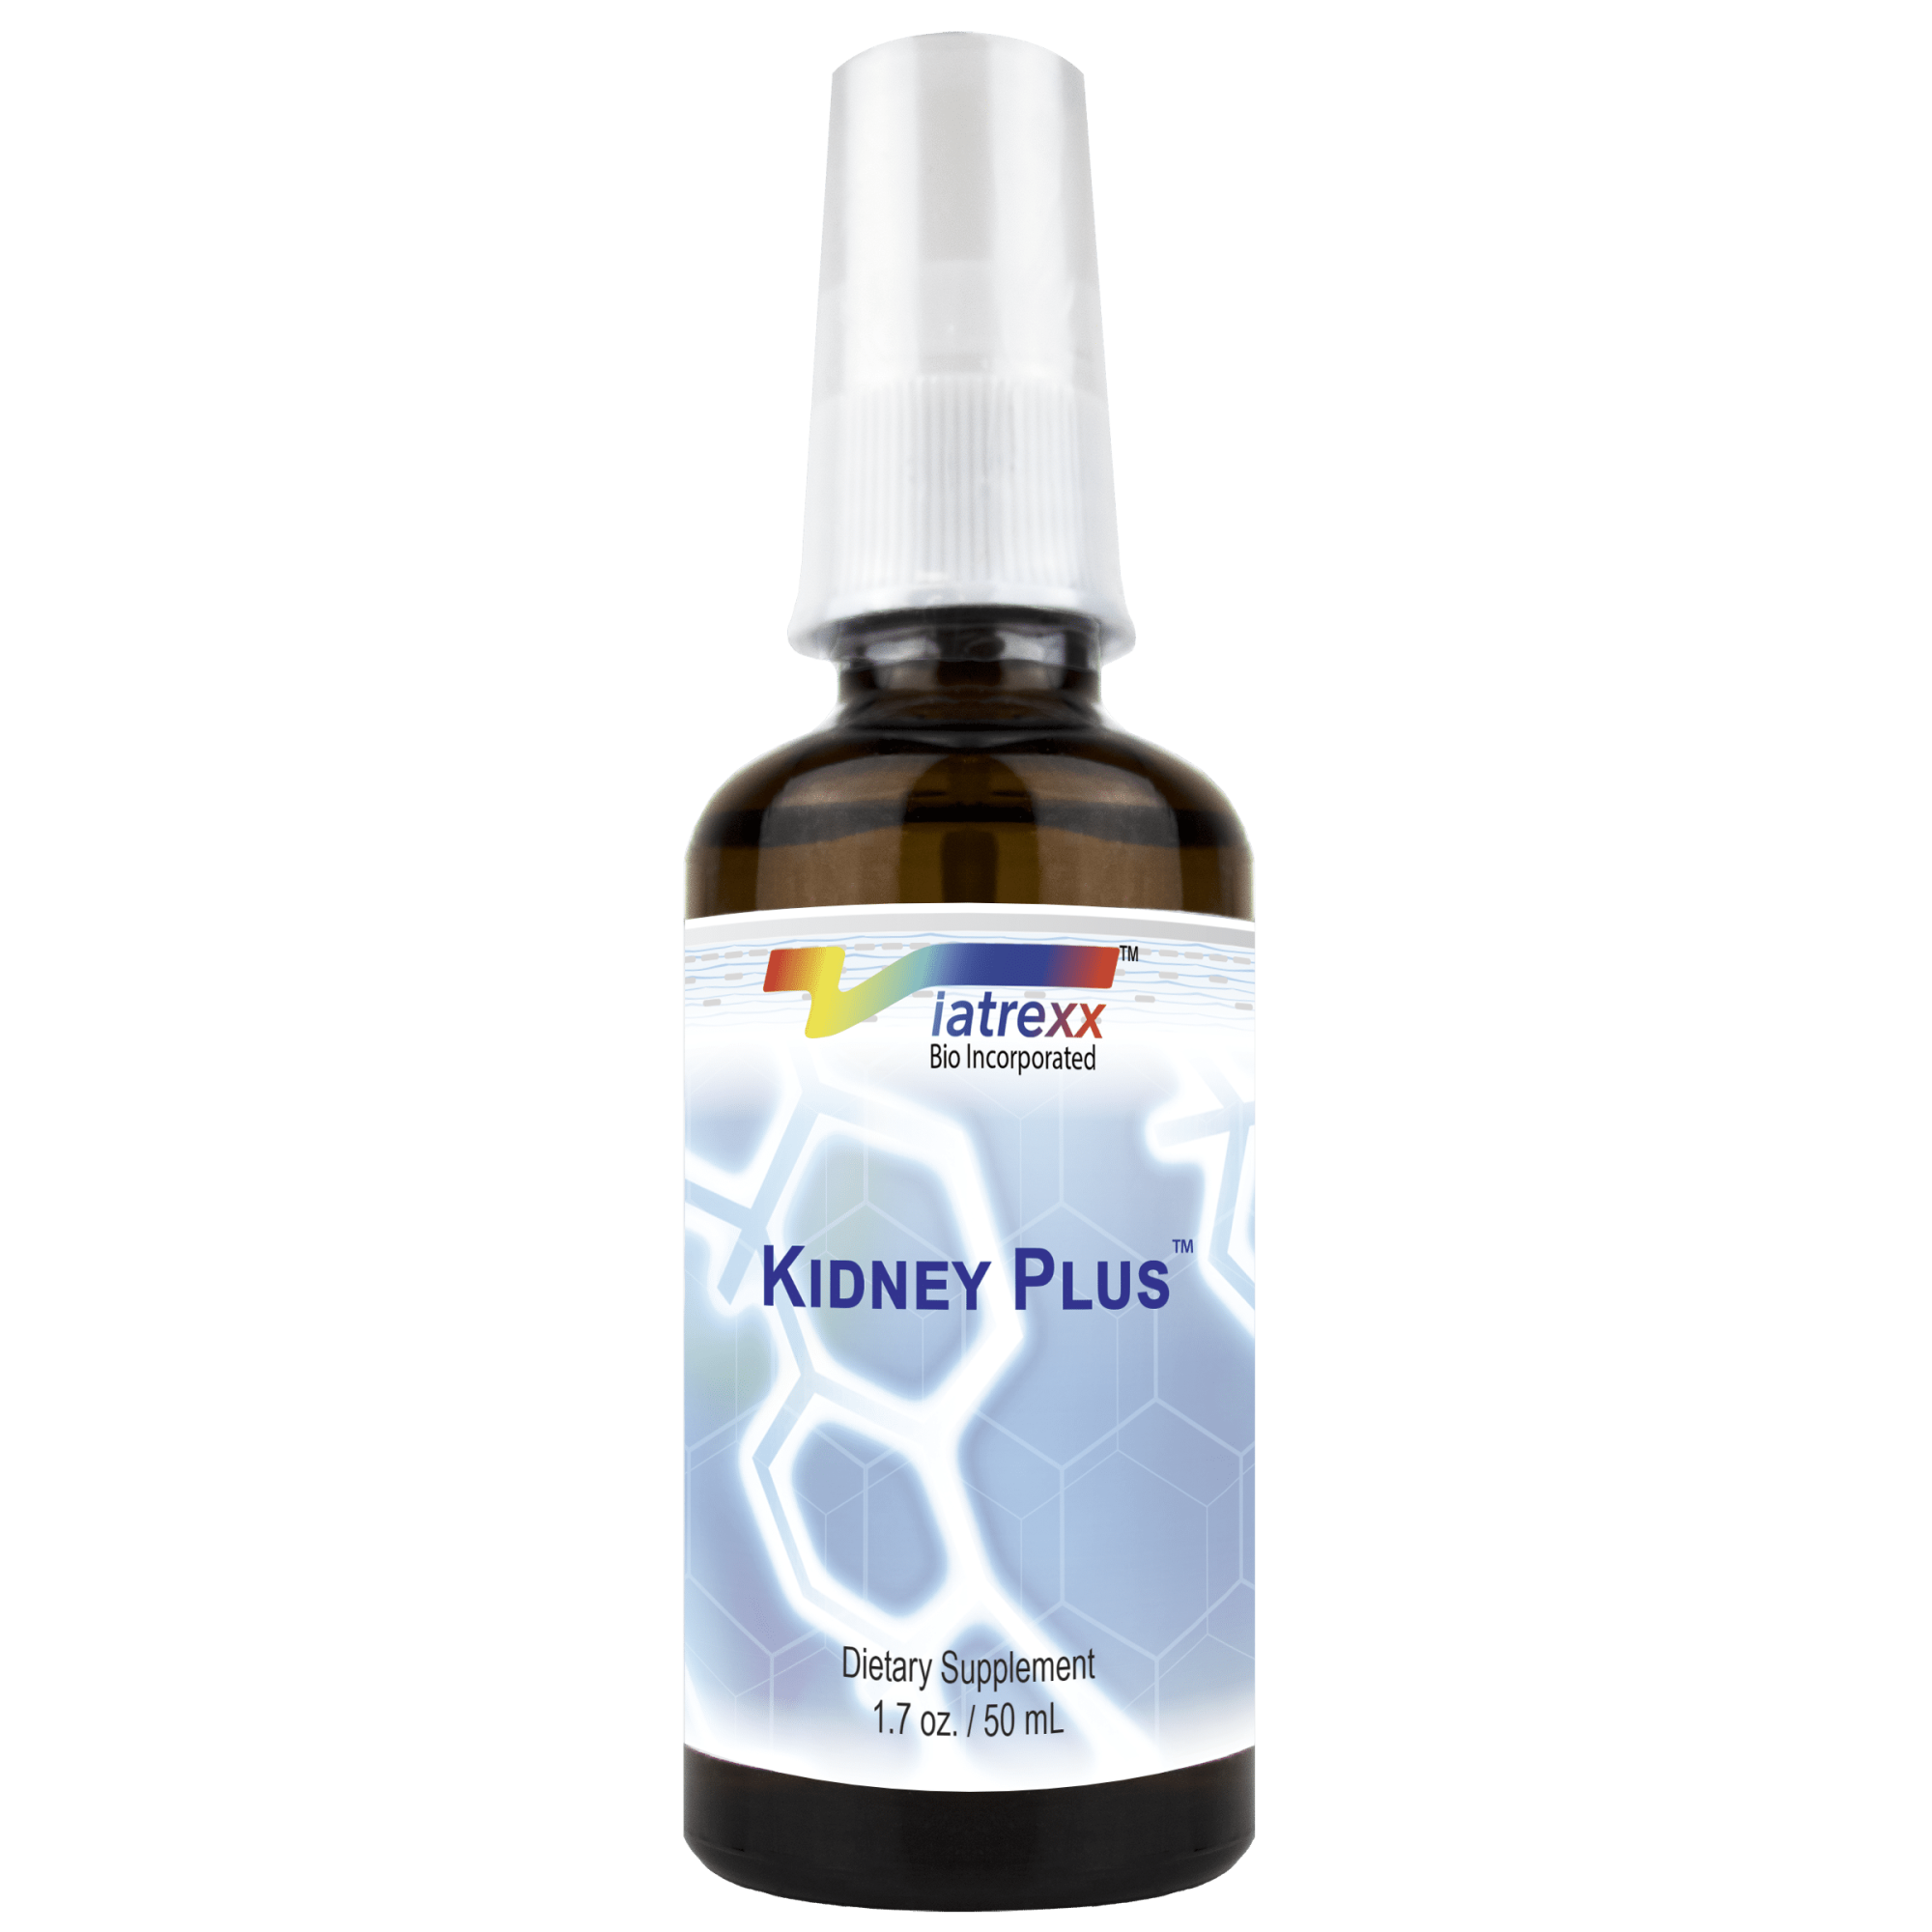 Kidney Plus 50 ml Viatrexx